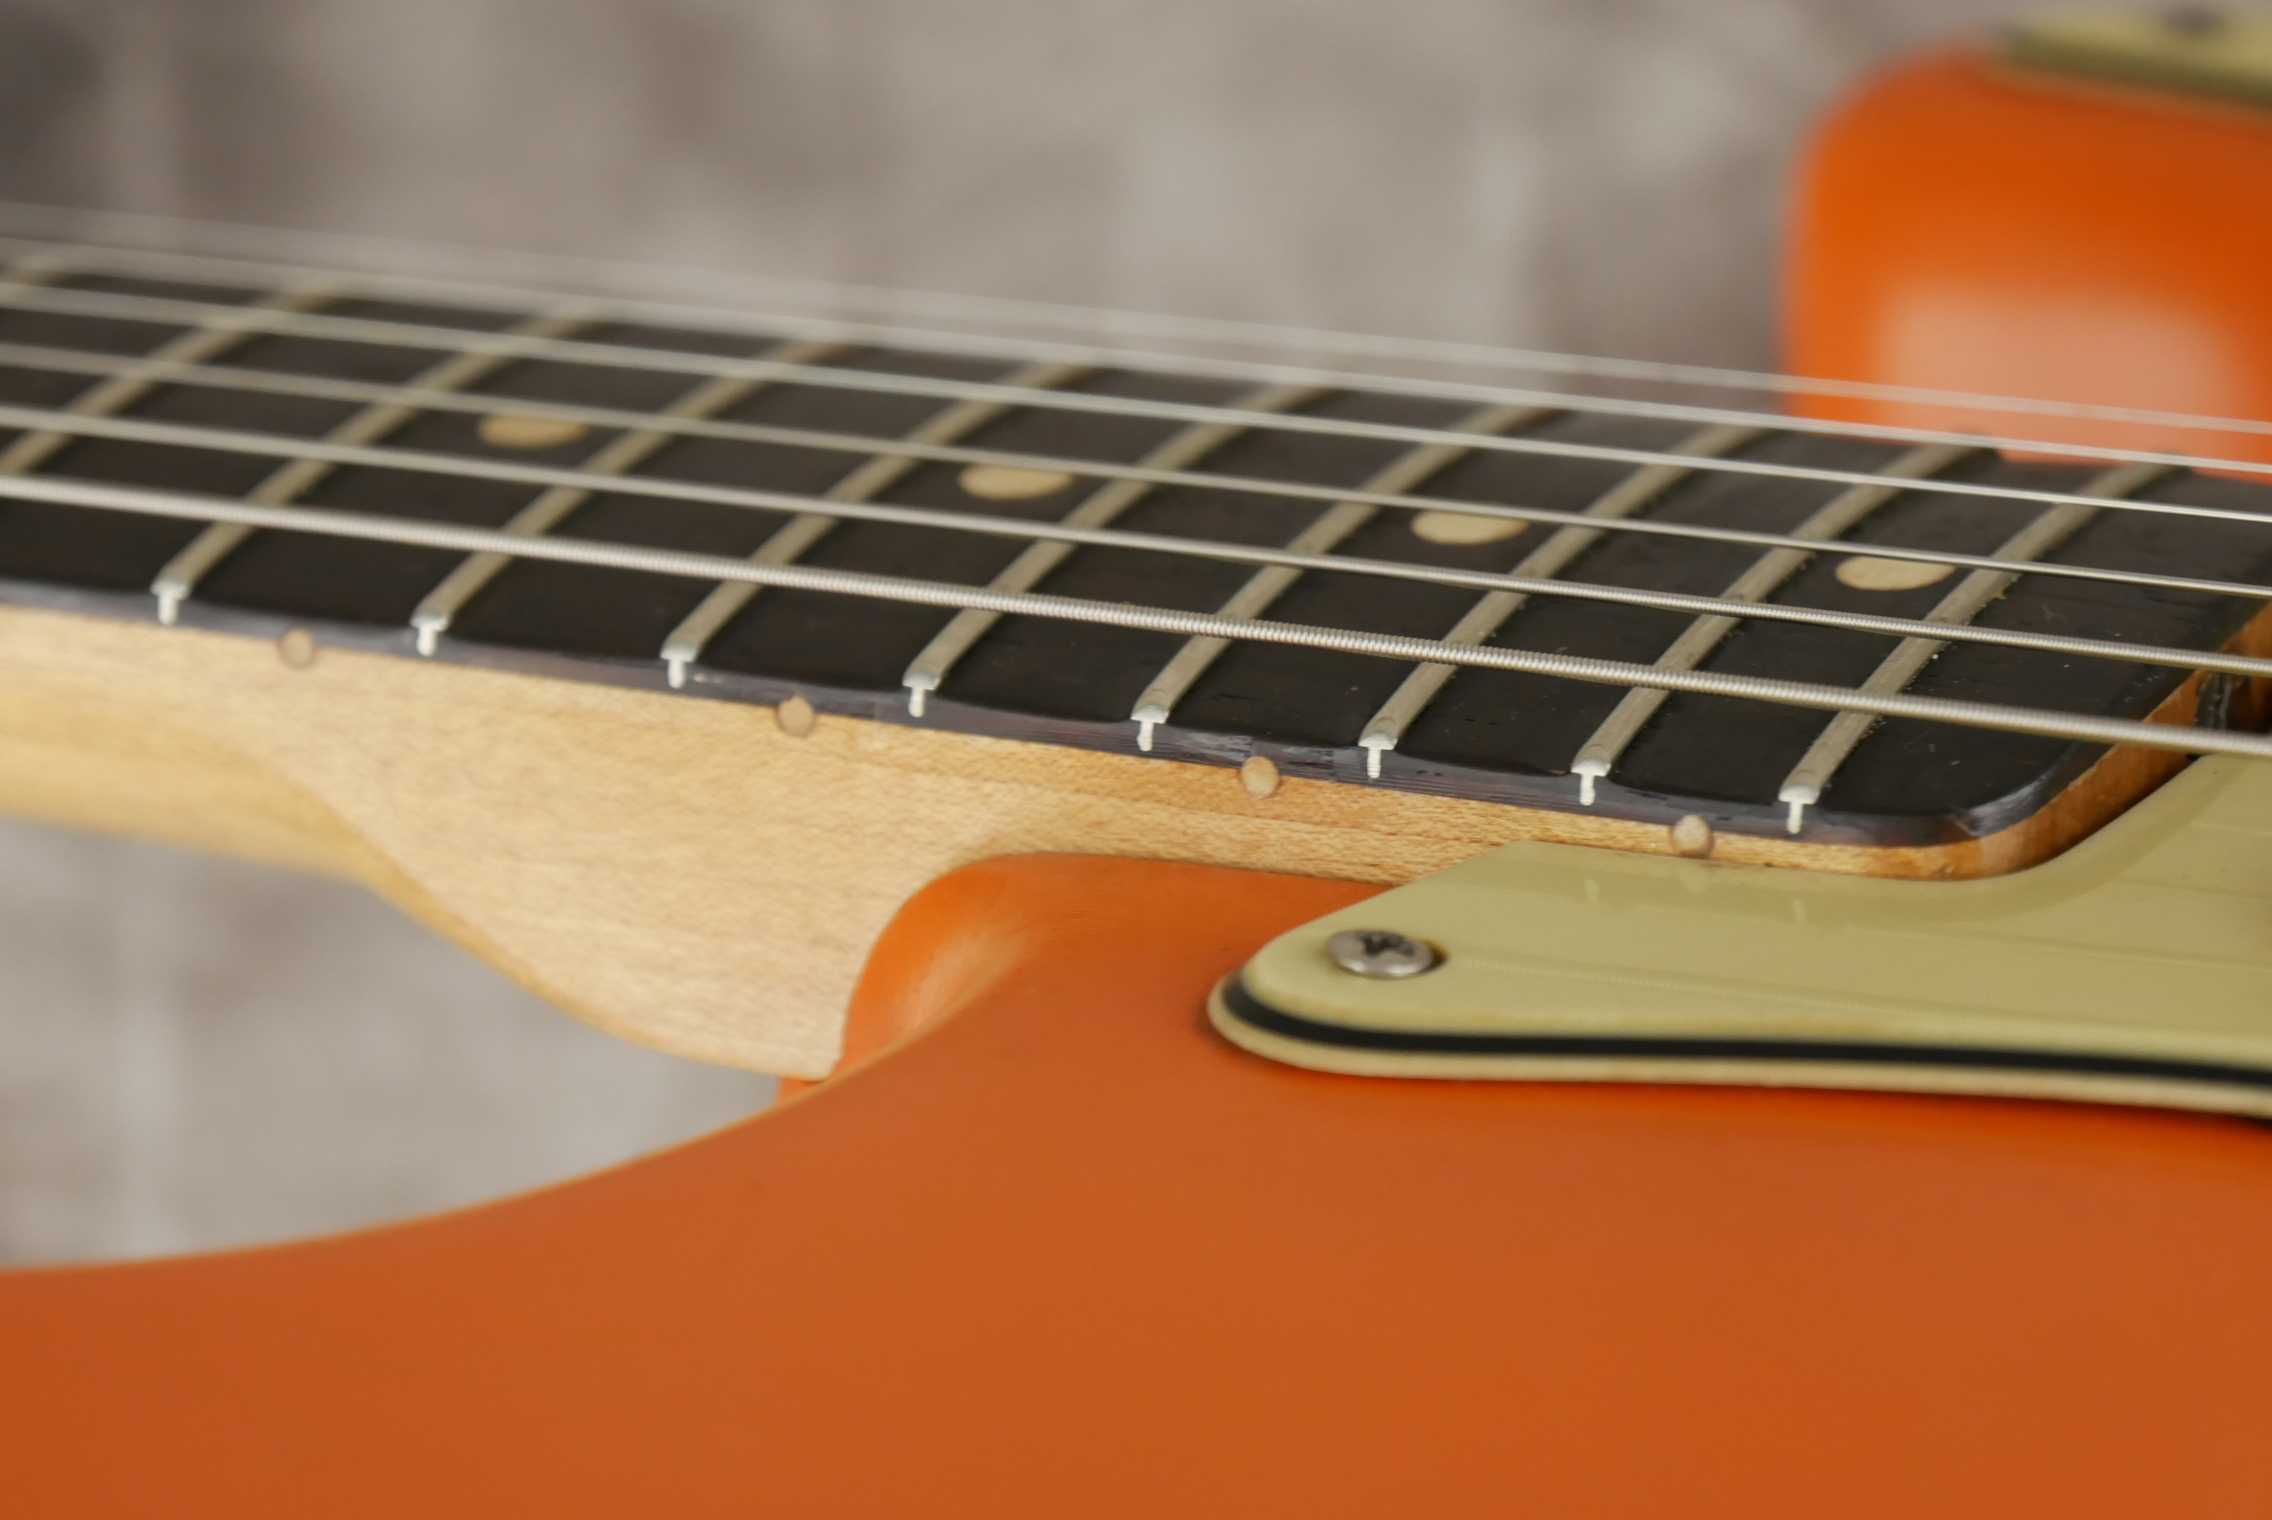 Fender-Stratocaster-1964-orange-refinish-015.JPG